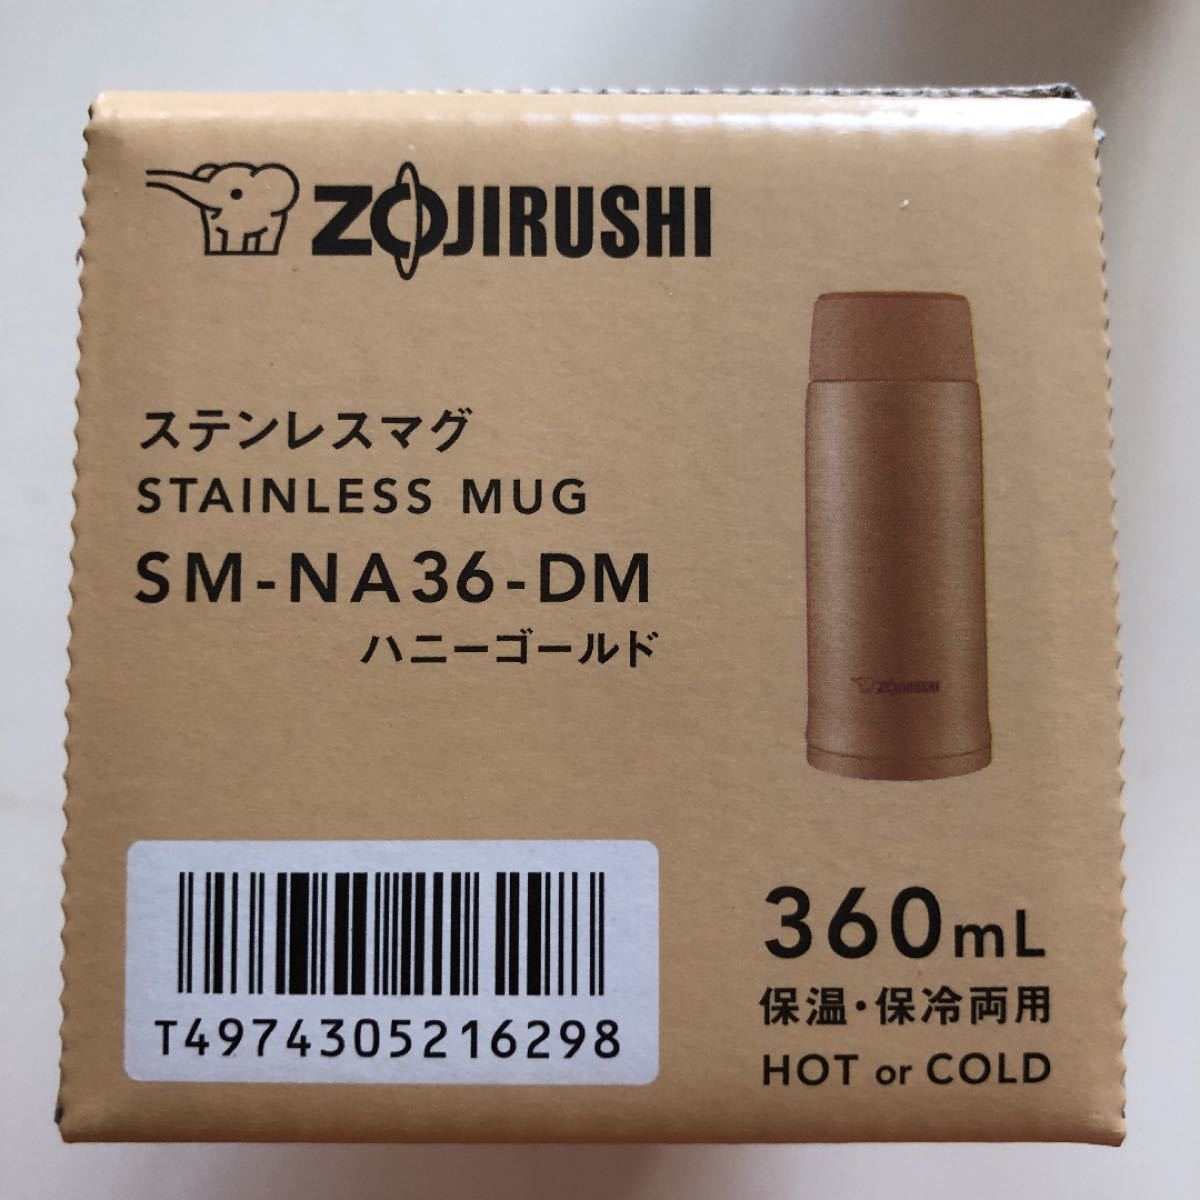 ZOJIRUSHI 象印 水筒 ステンレスマグ 360ml ハニーゴルード